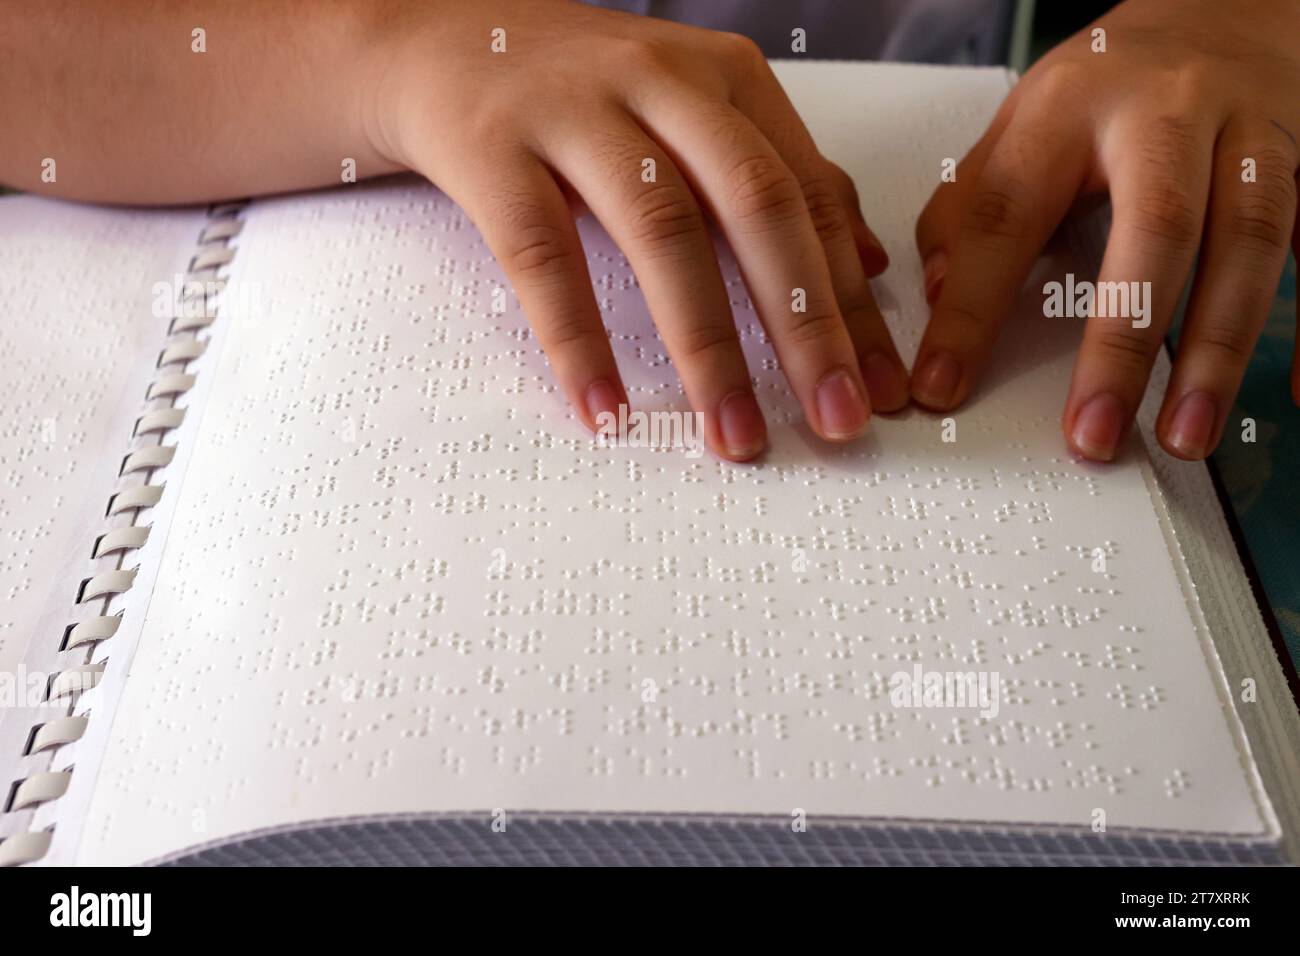 Gros plan sur les mains d'une fille aveugle lisant un livre en braille, Centre pour les enfants aveugles, Ho Chi Minh ville, Vietnam, Indochine, Asie du Sud-est, Asie Banque D'Images